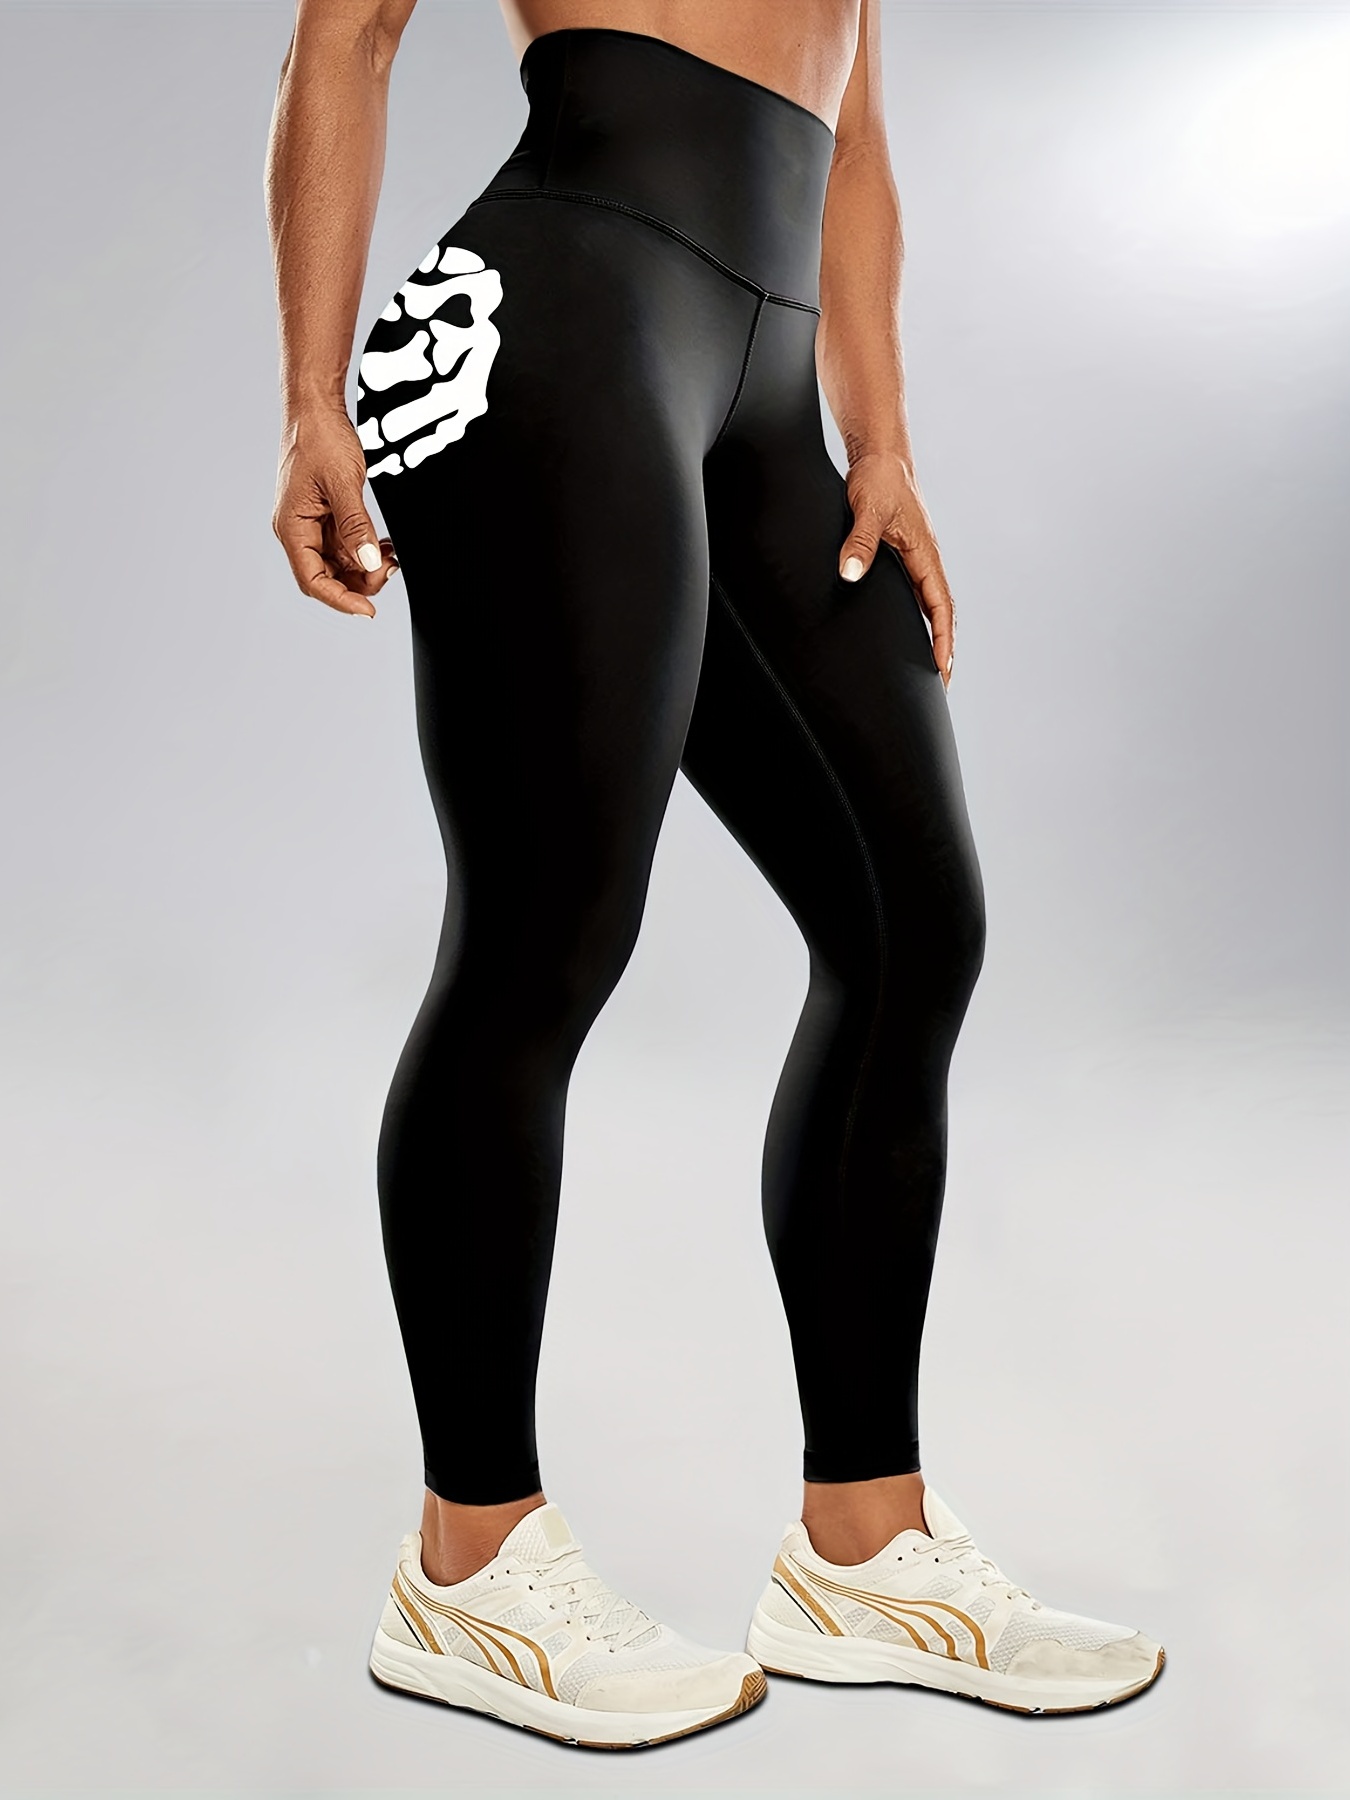 Why Do Leggings Fall Downhigh Waist Halloween Skull Print Leggings -  Women's Fitness Spandex Pants